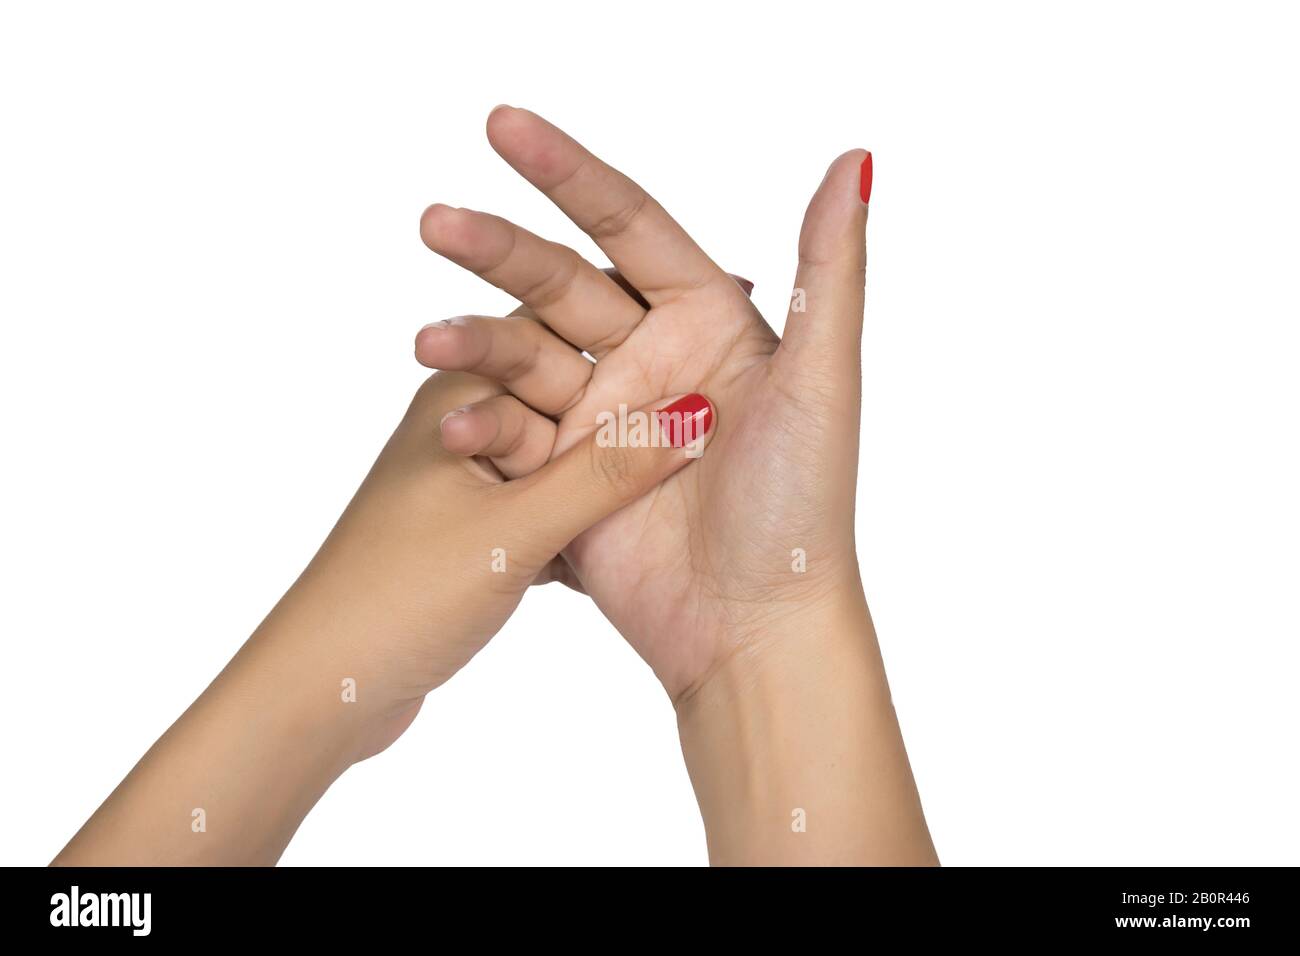 Frau Handfinger mit rotem Nagel. Hand Trigger Finger LOCK gesund Konzept weiß Hintergrund Stockfoto